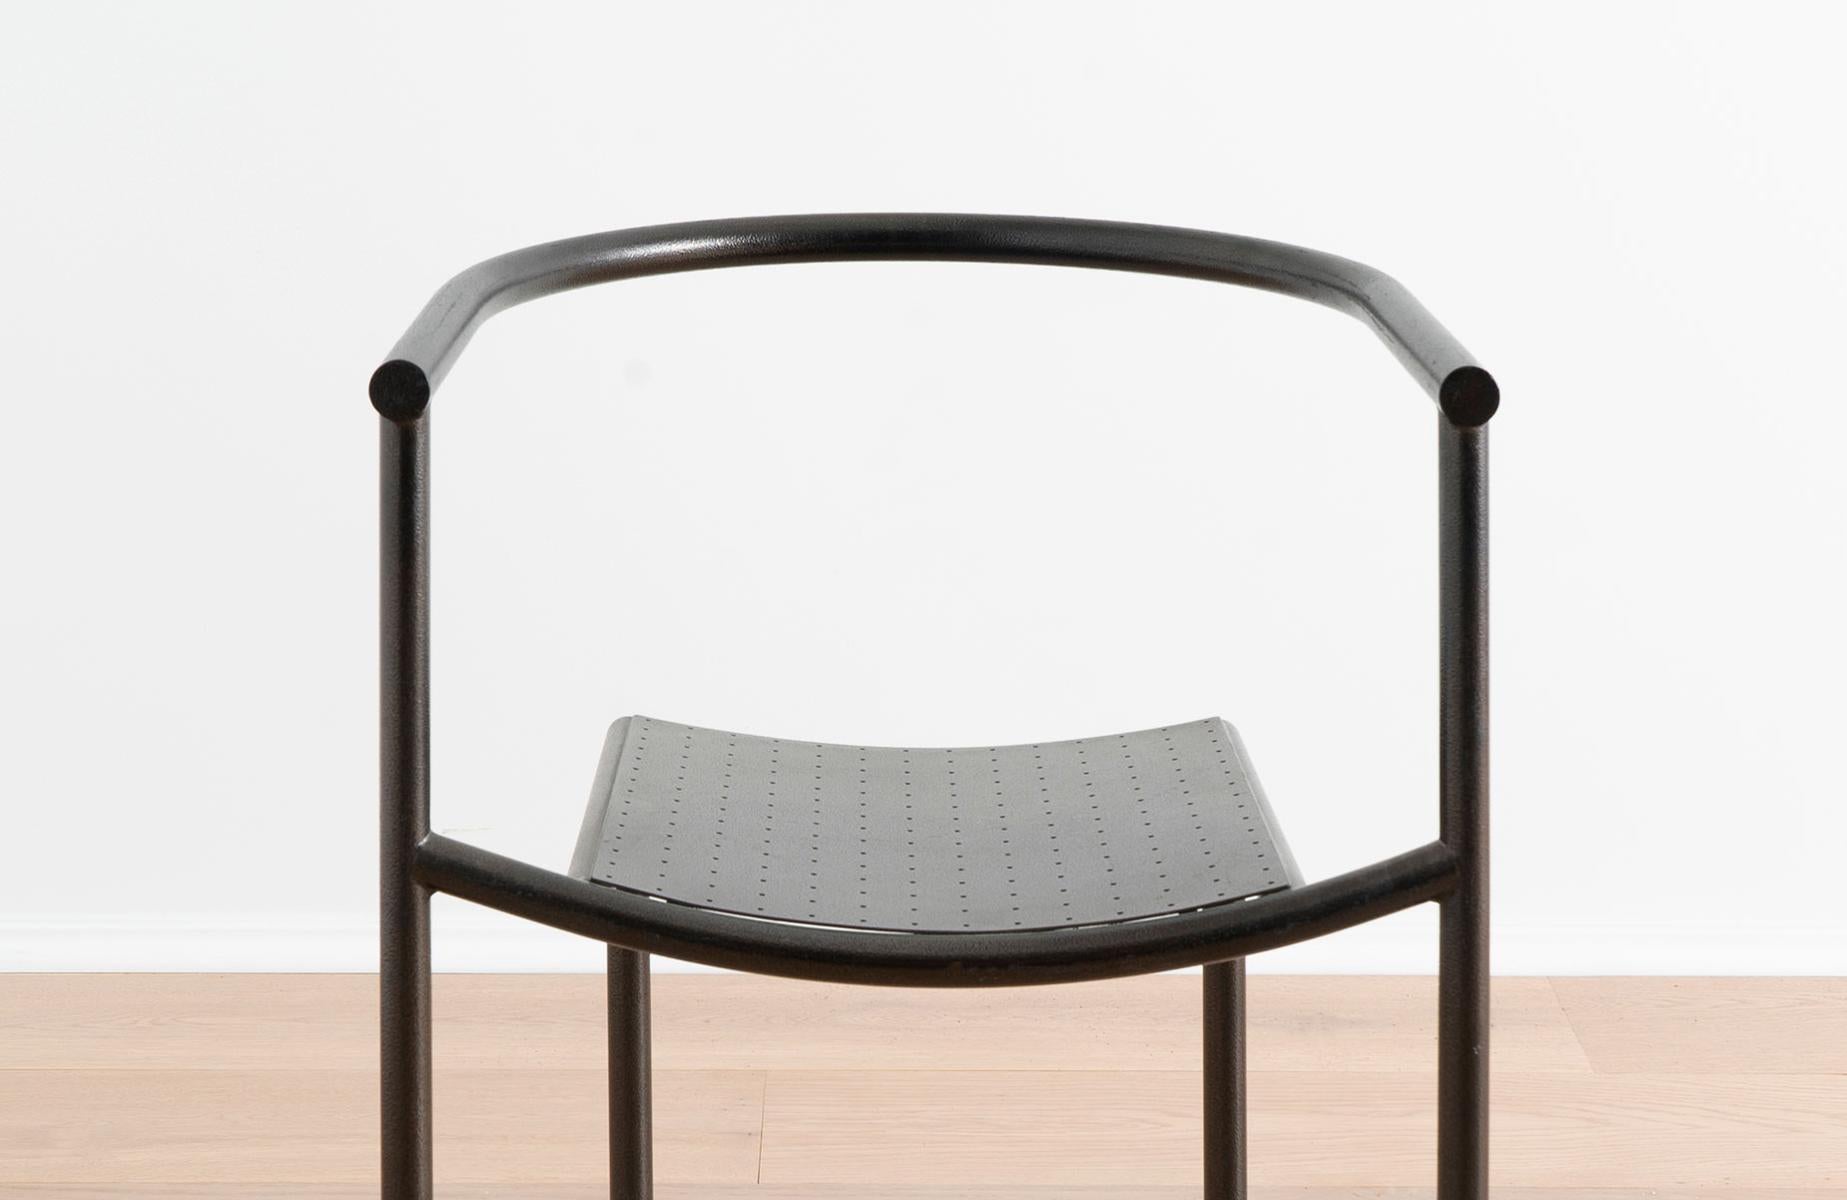 Painted Postmodern Minimal Metal Von Vogelsang Chair by Philippe Starck